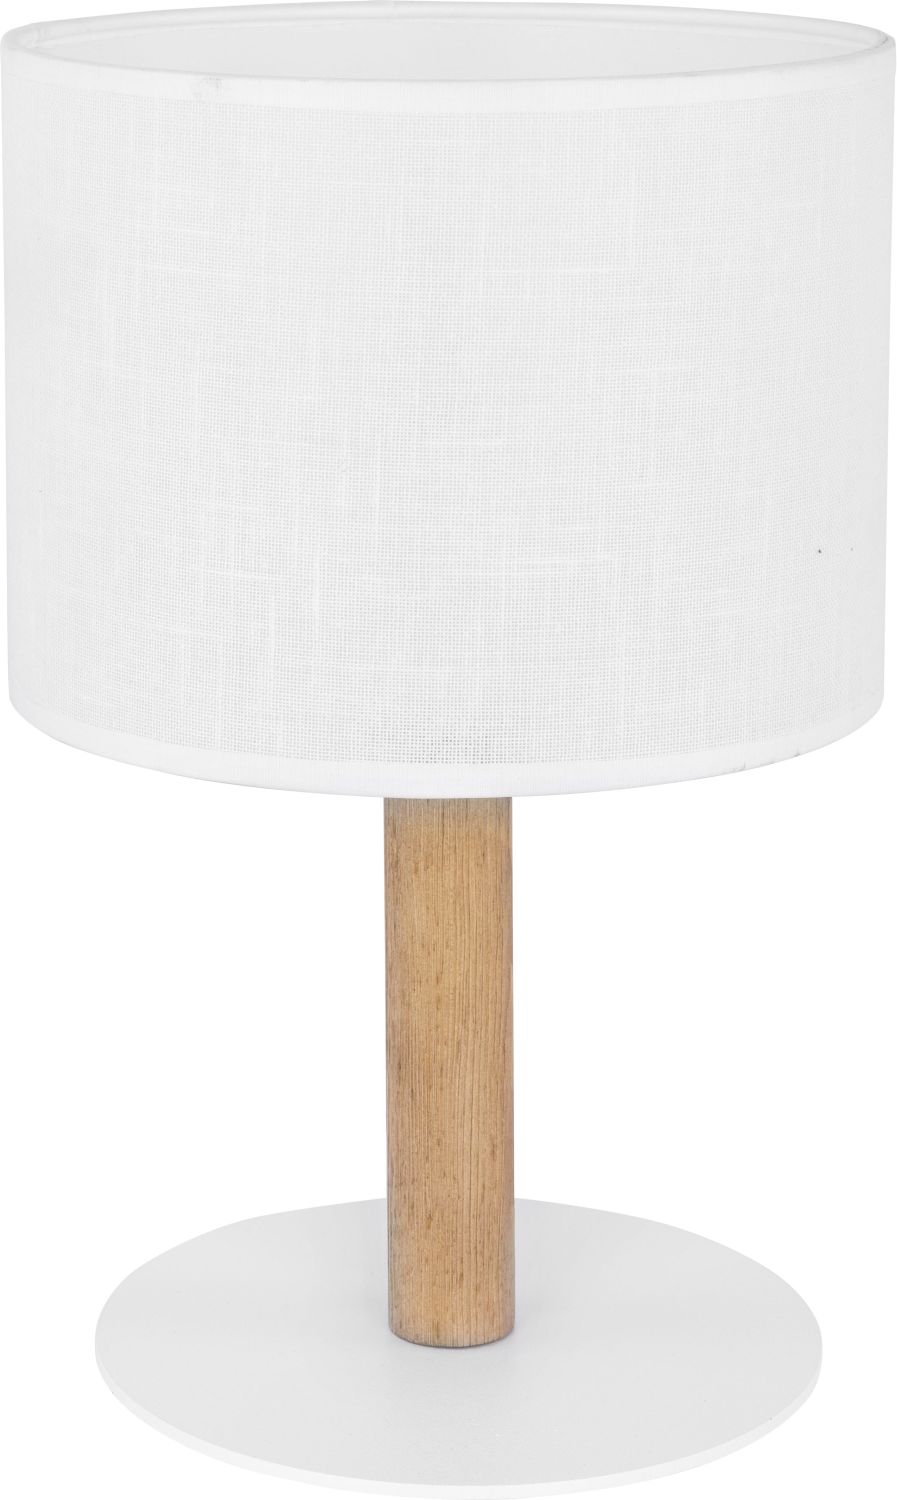 Tischlampe Weiß Holz SEYA Wohnzimmer Bett Lampe